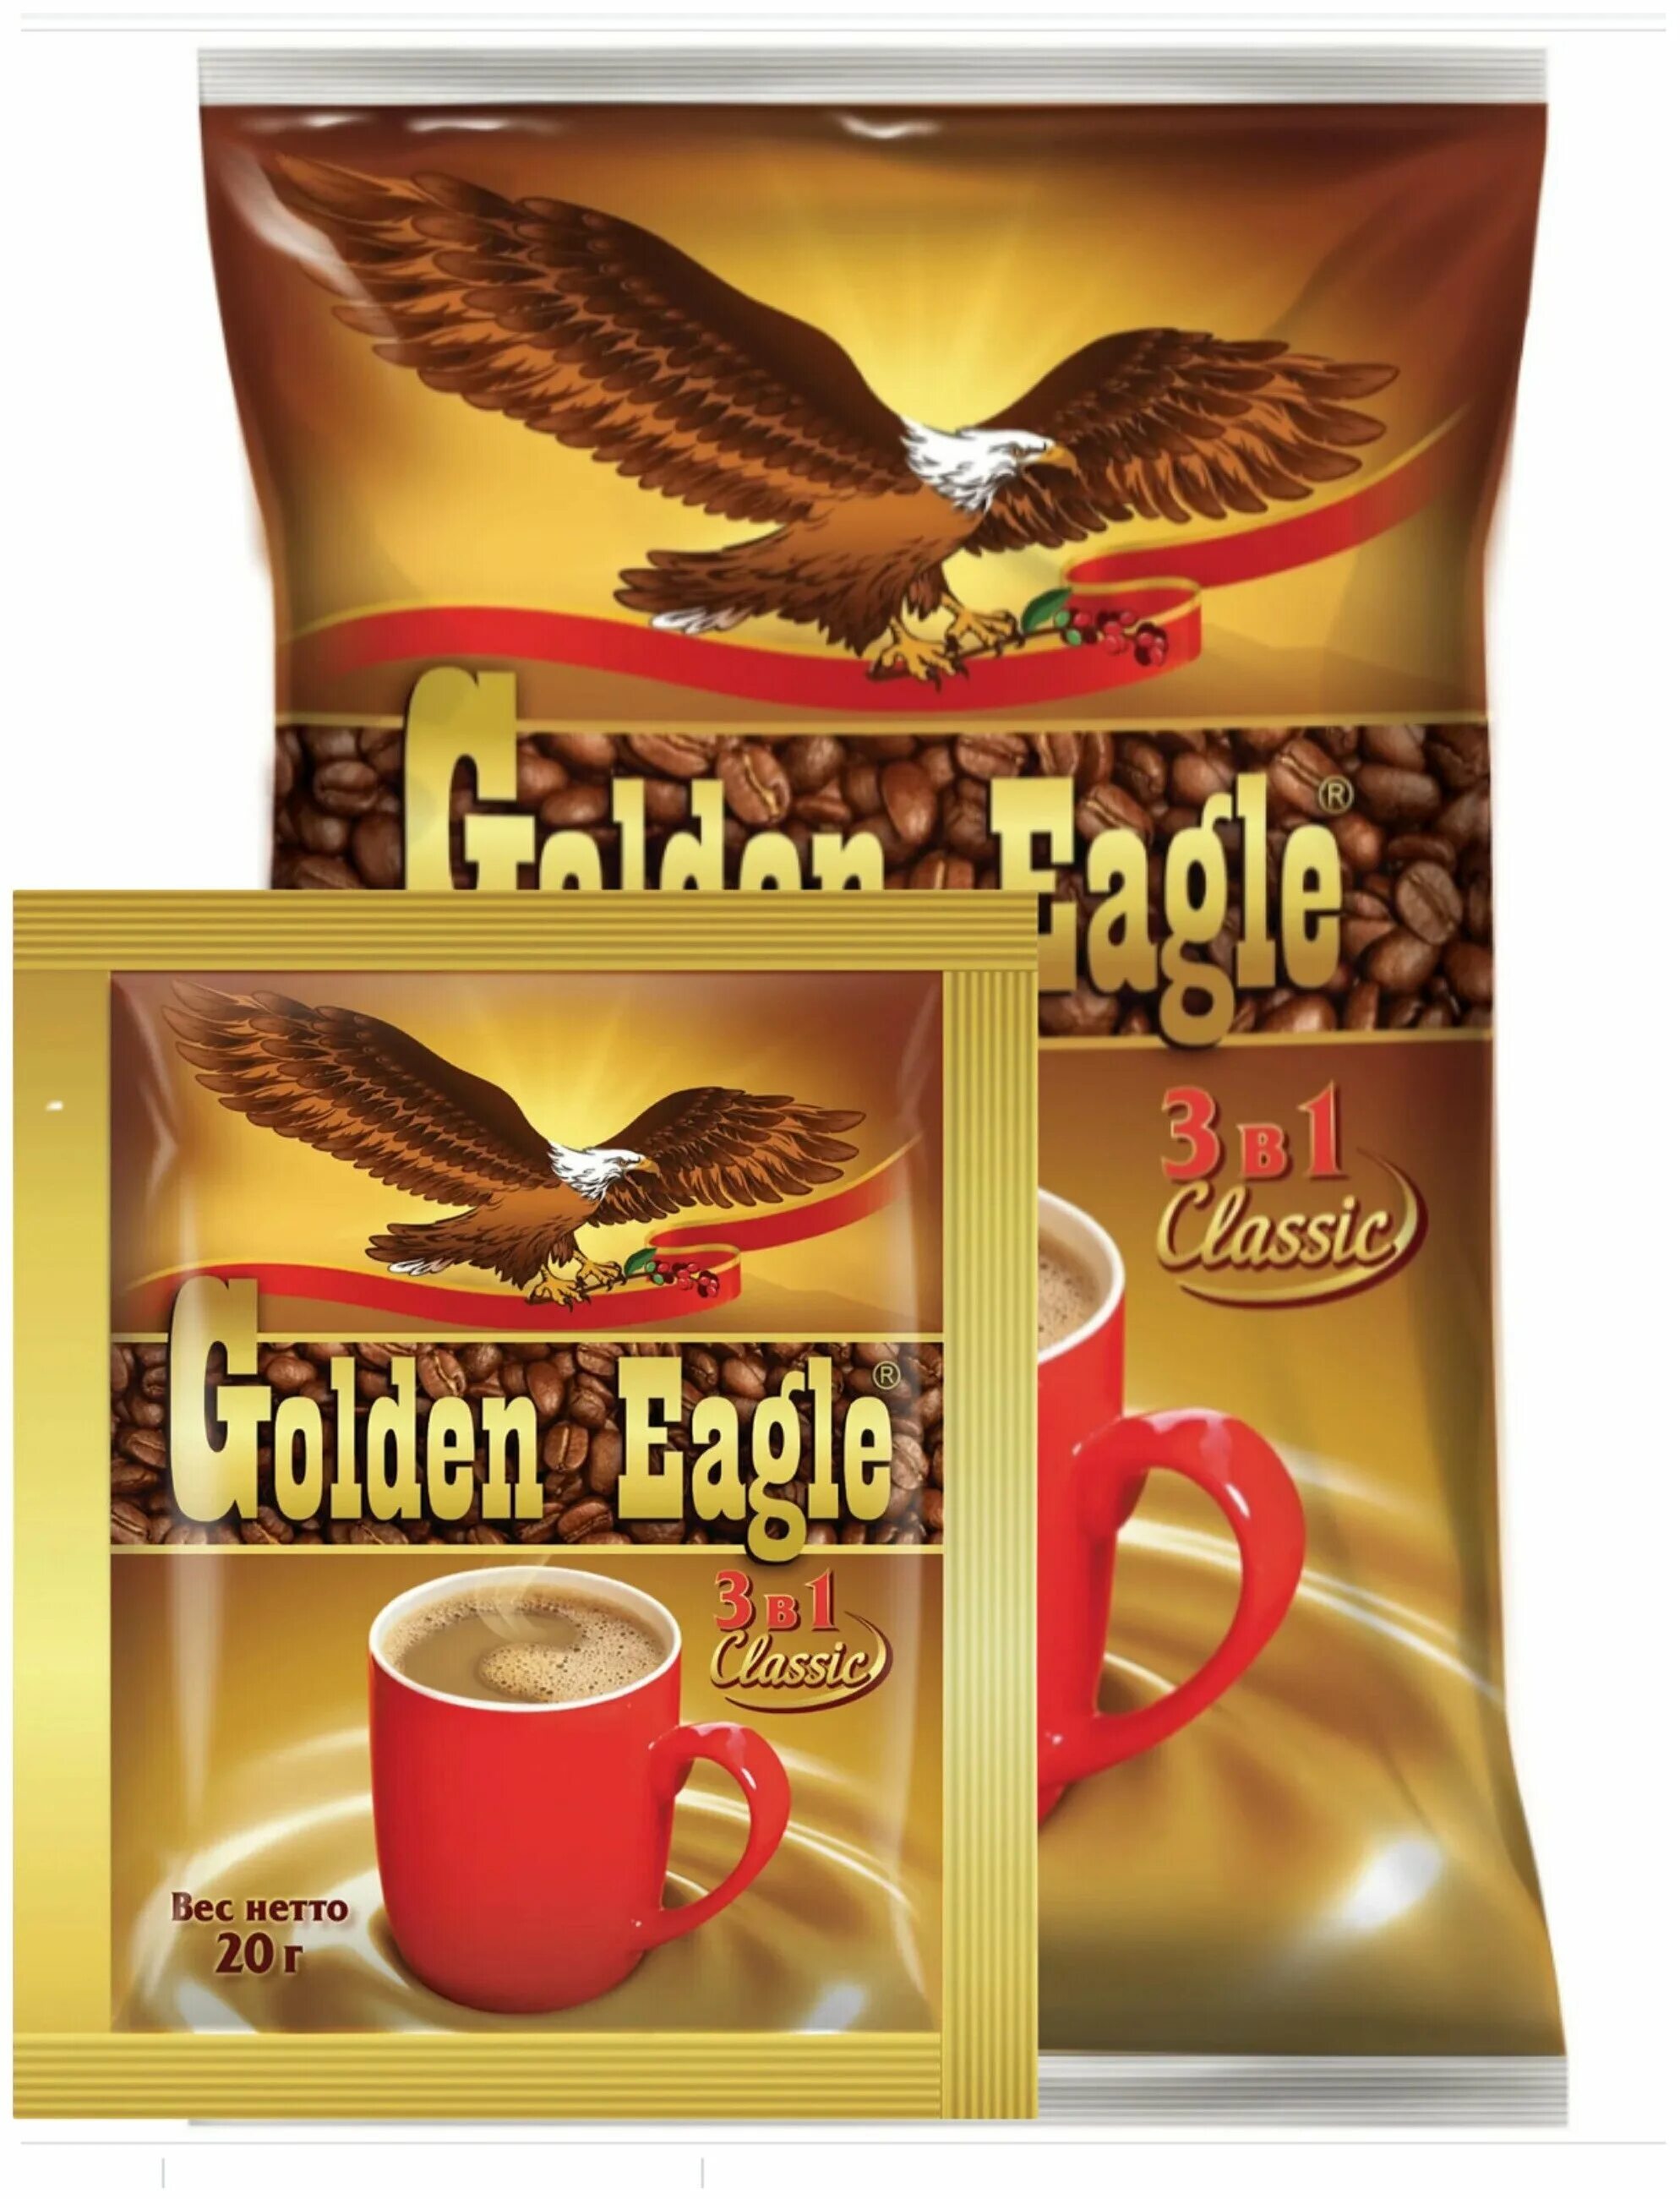 Кофе игл. Кофе Golden Eagle 3в1 20г. Golden Eagle Classic 3 в 1. Кофейный напиток Голден игл 3в1 50п. Кофе 3 в 1 "Golden Eagle Classic" 20 г.